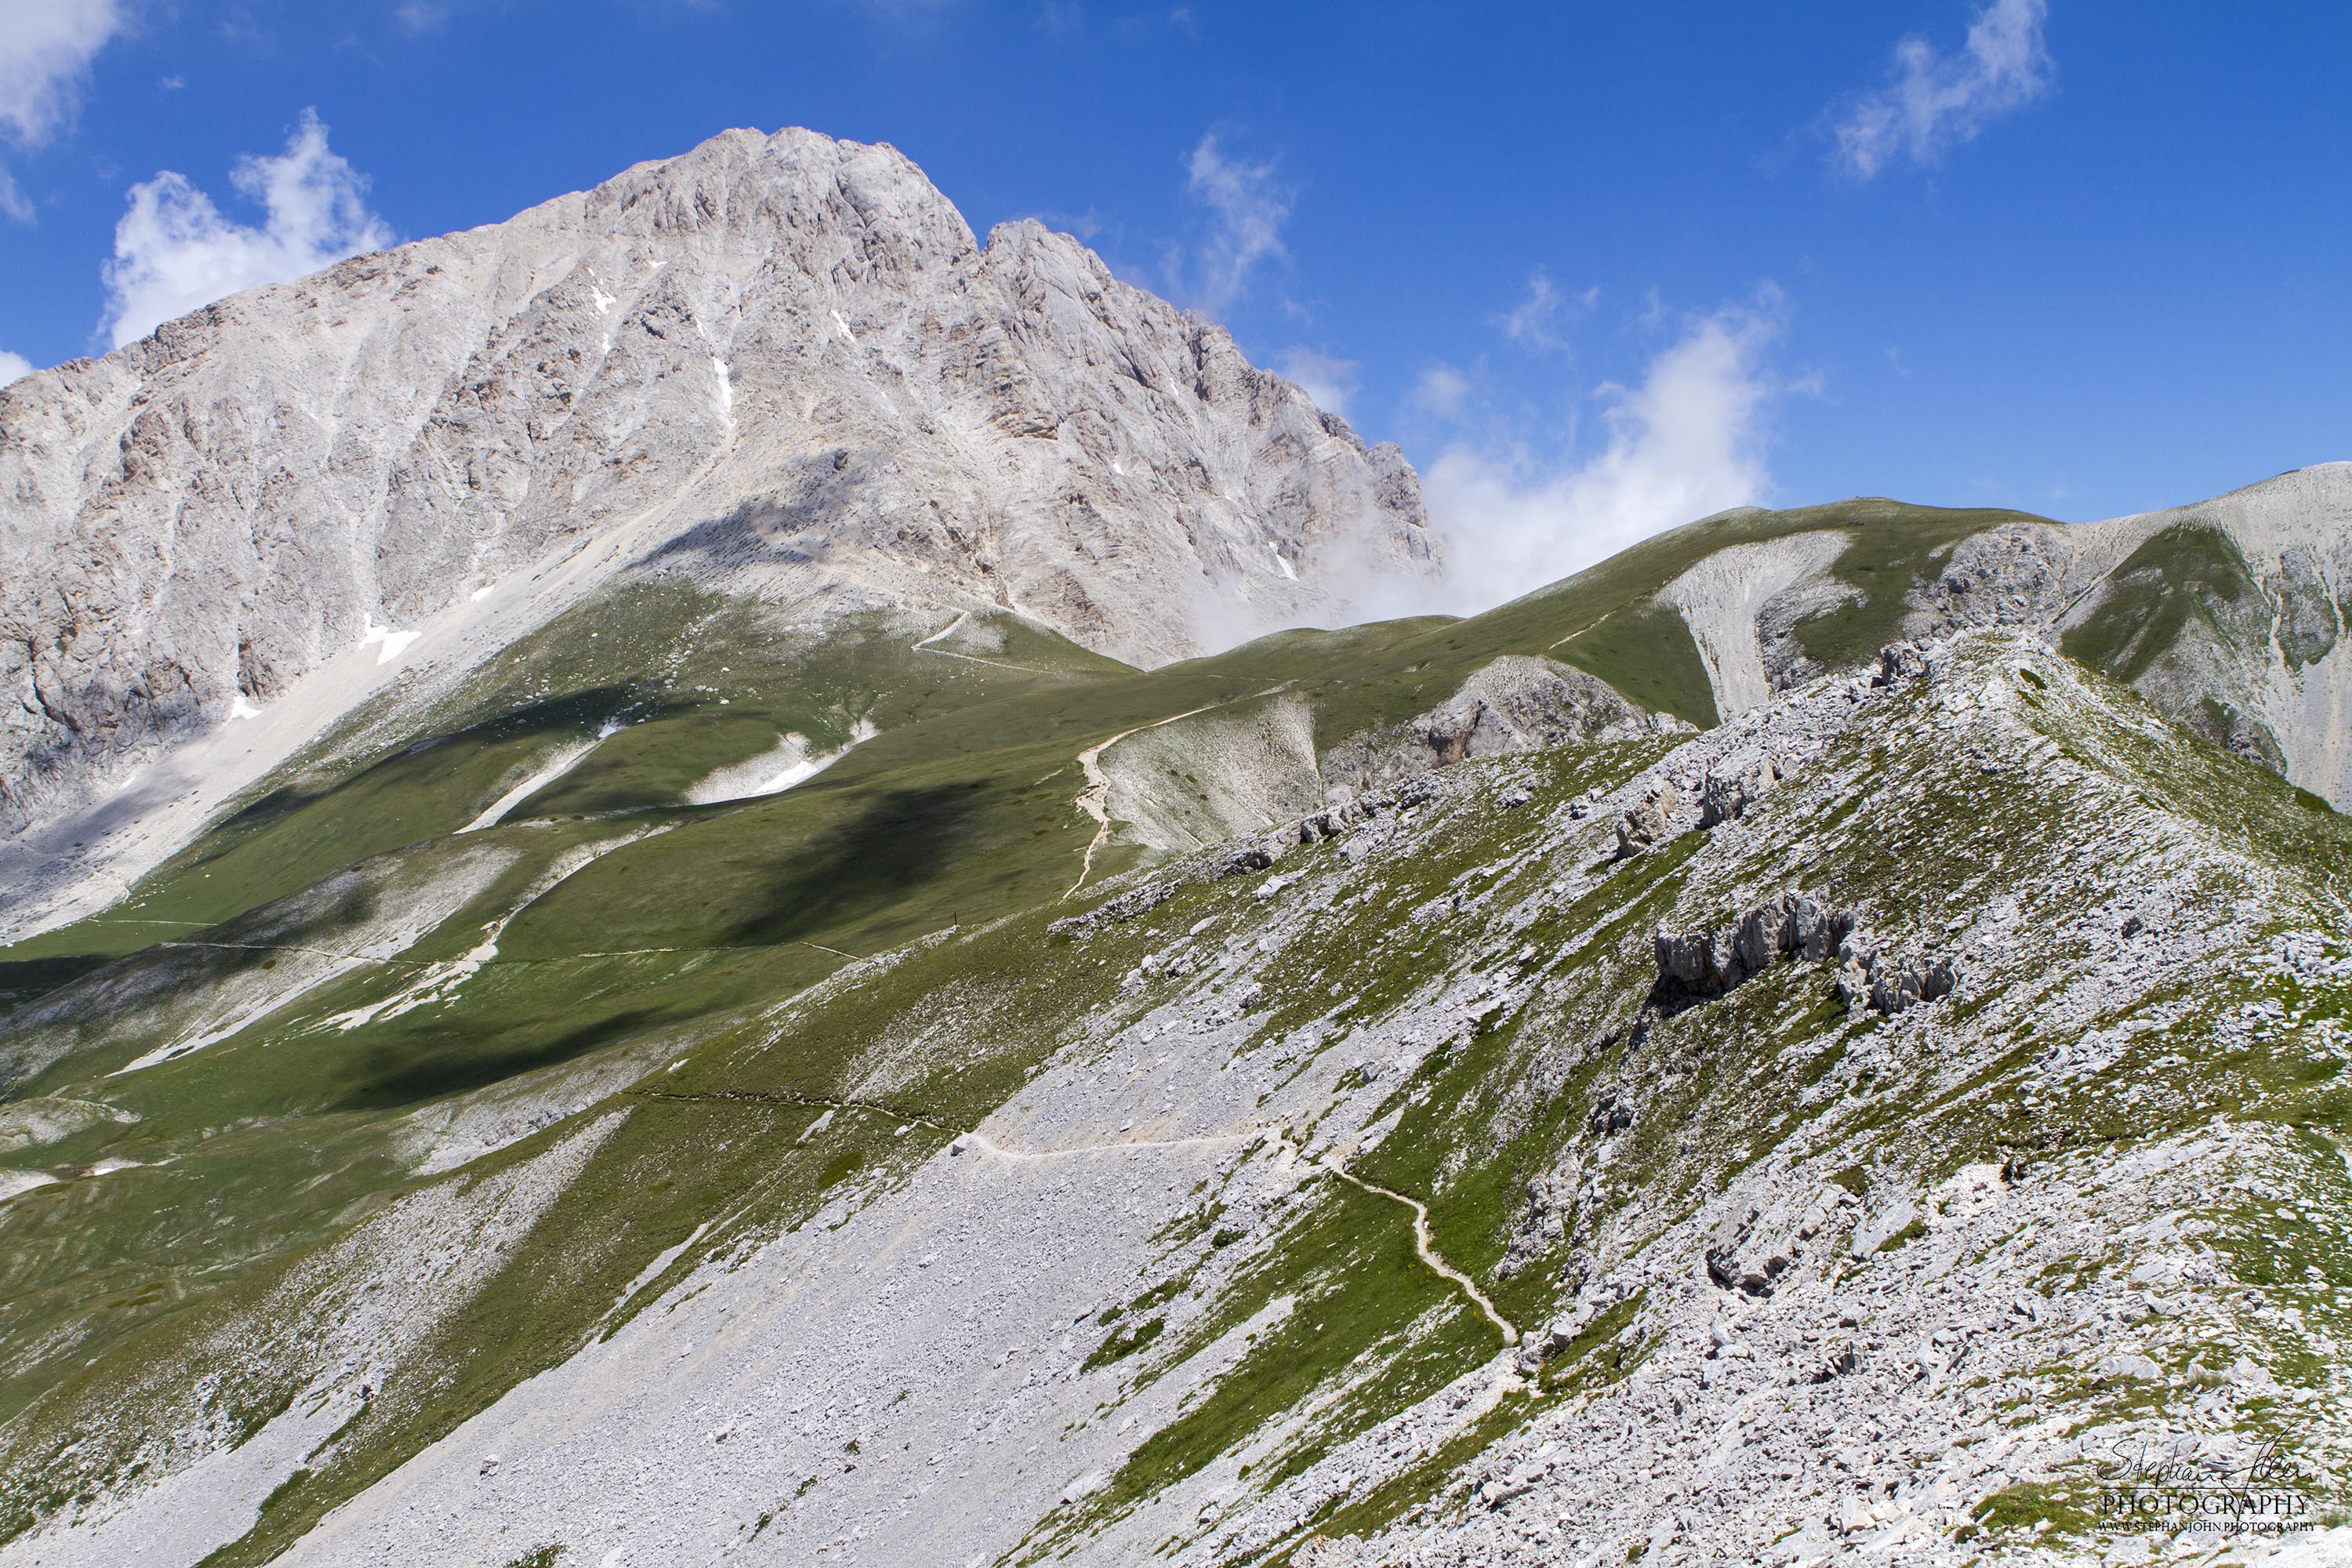 Blick auf den höchsten Berg der Abruzzen - den Gran Sasso Corno Grande 2.912 m hoch